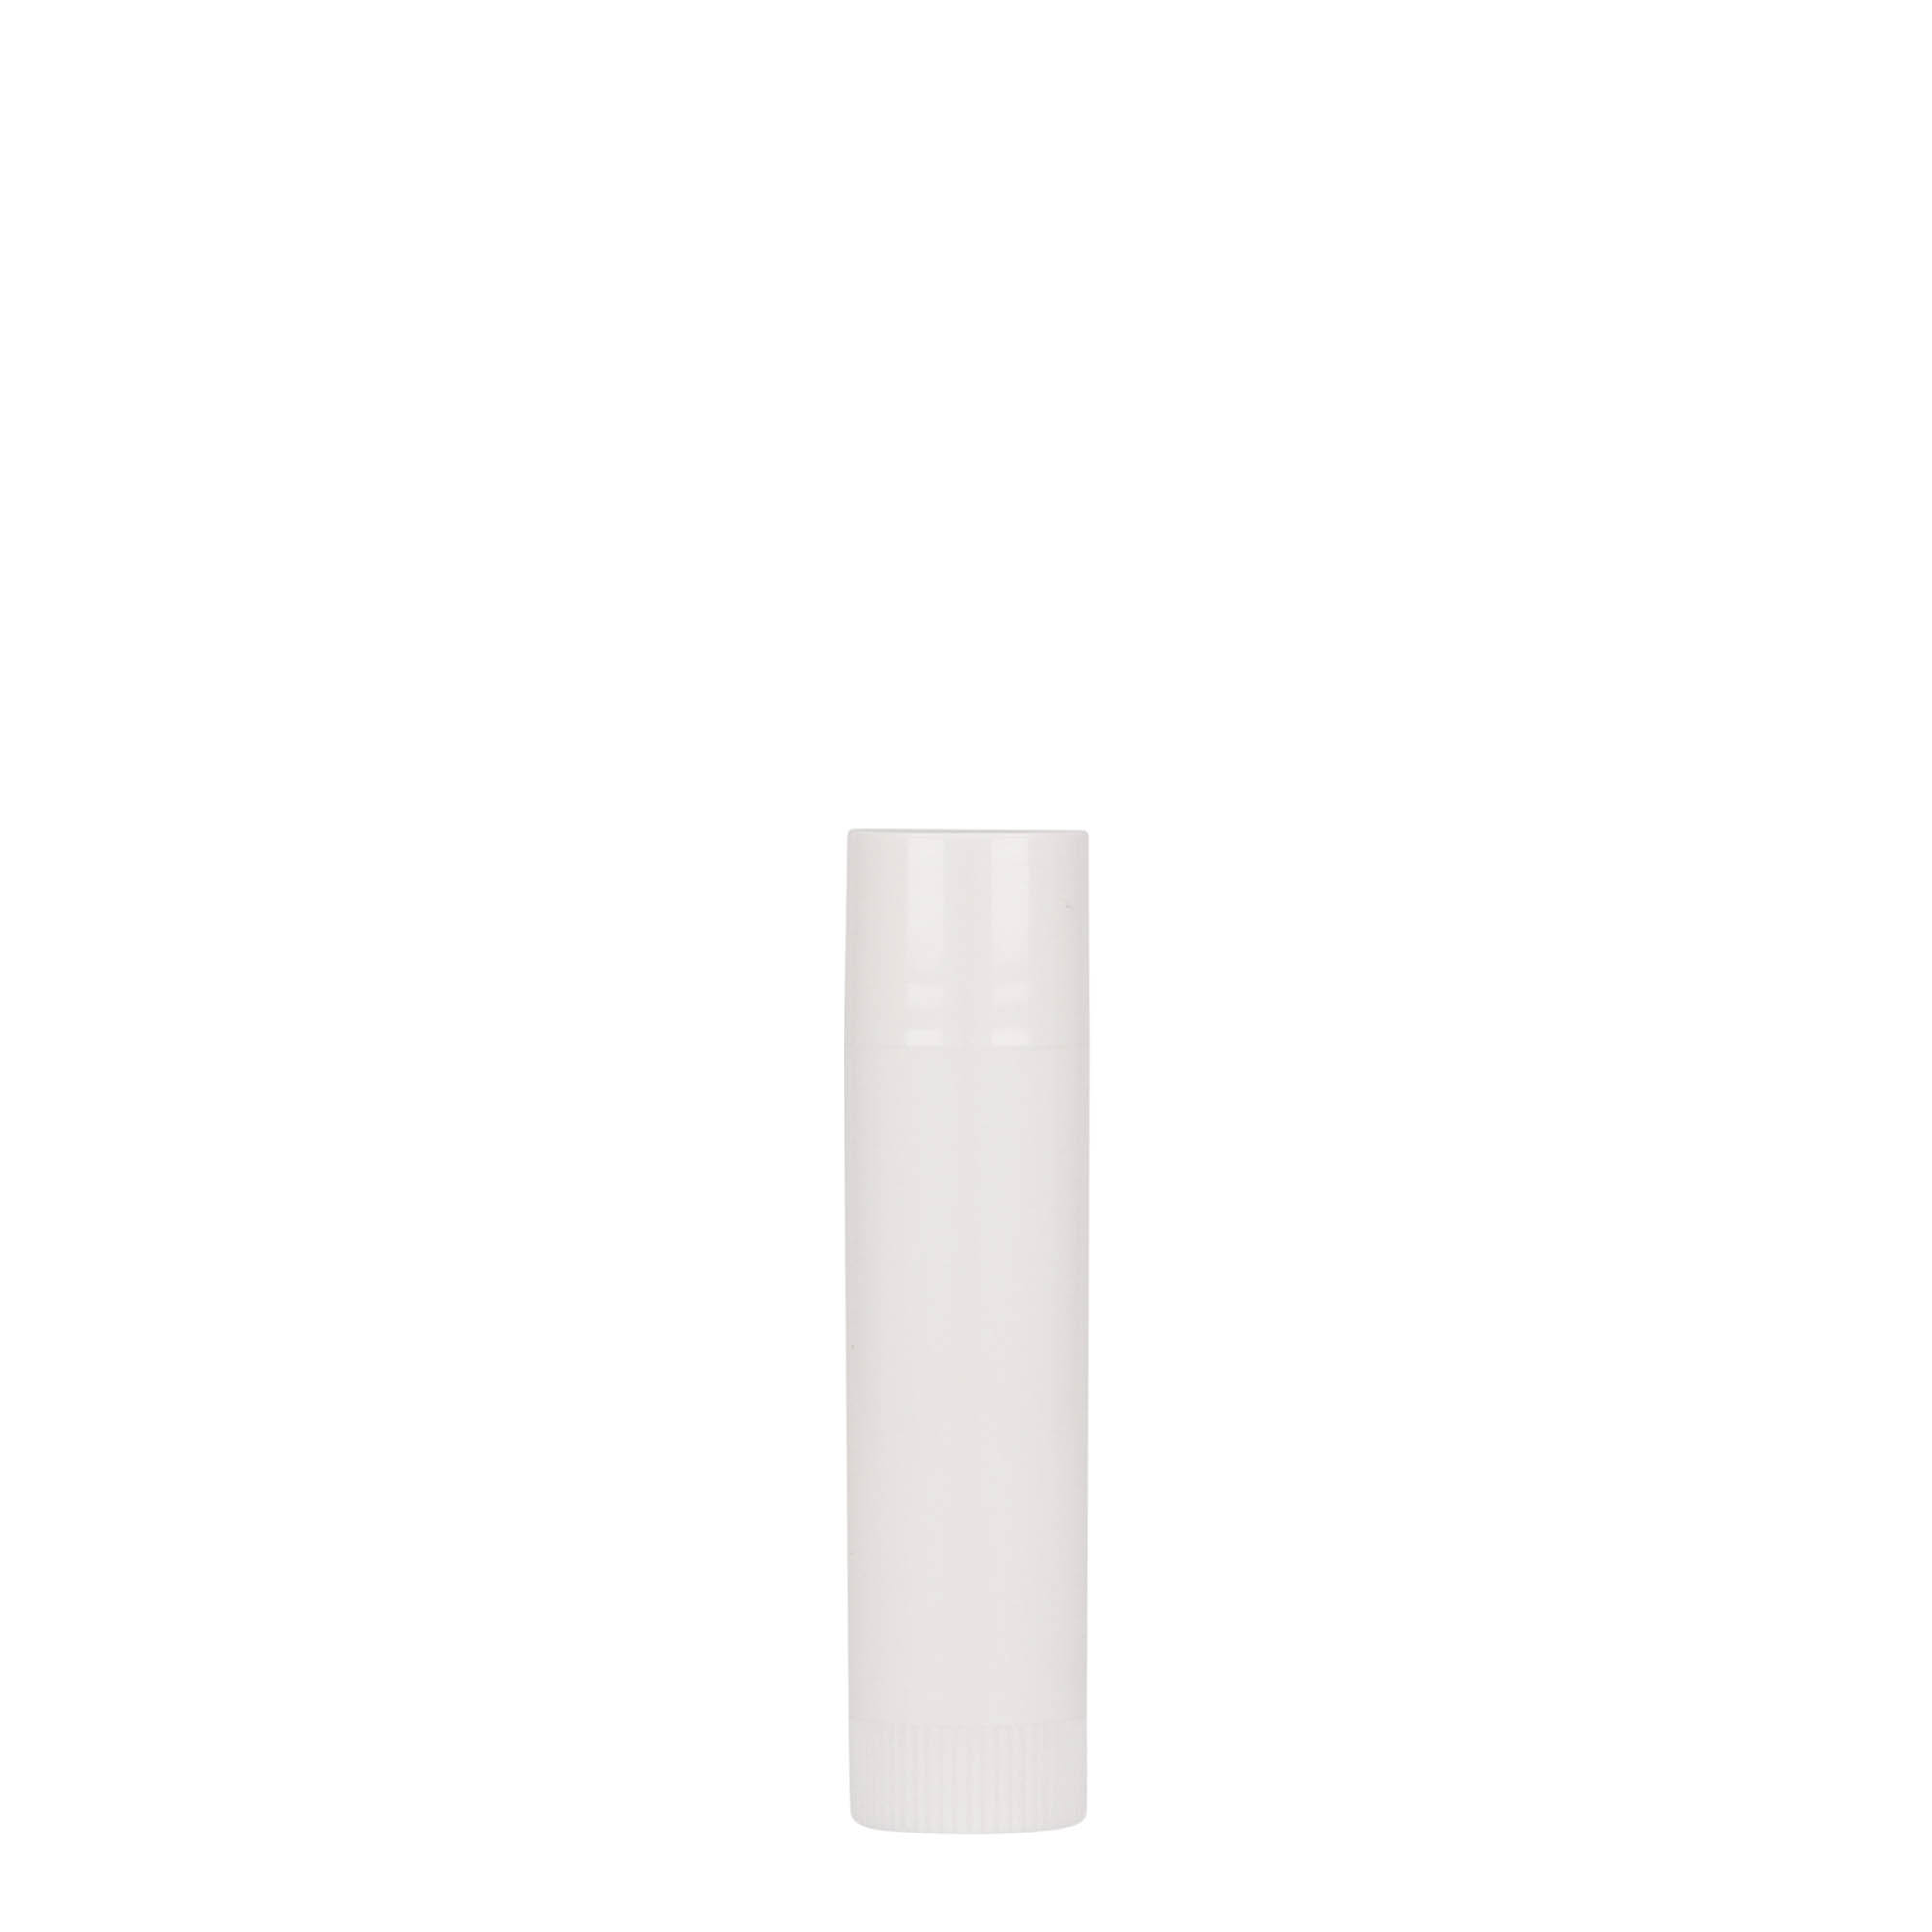 Lippenstift, 6 ml, PP-kunststof, wit